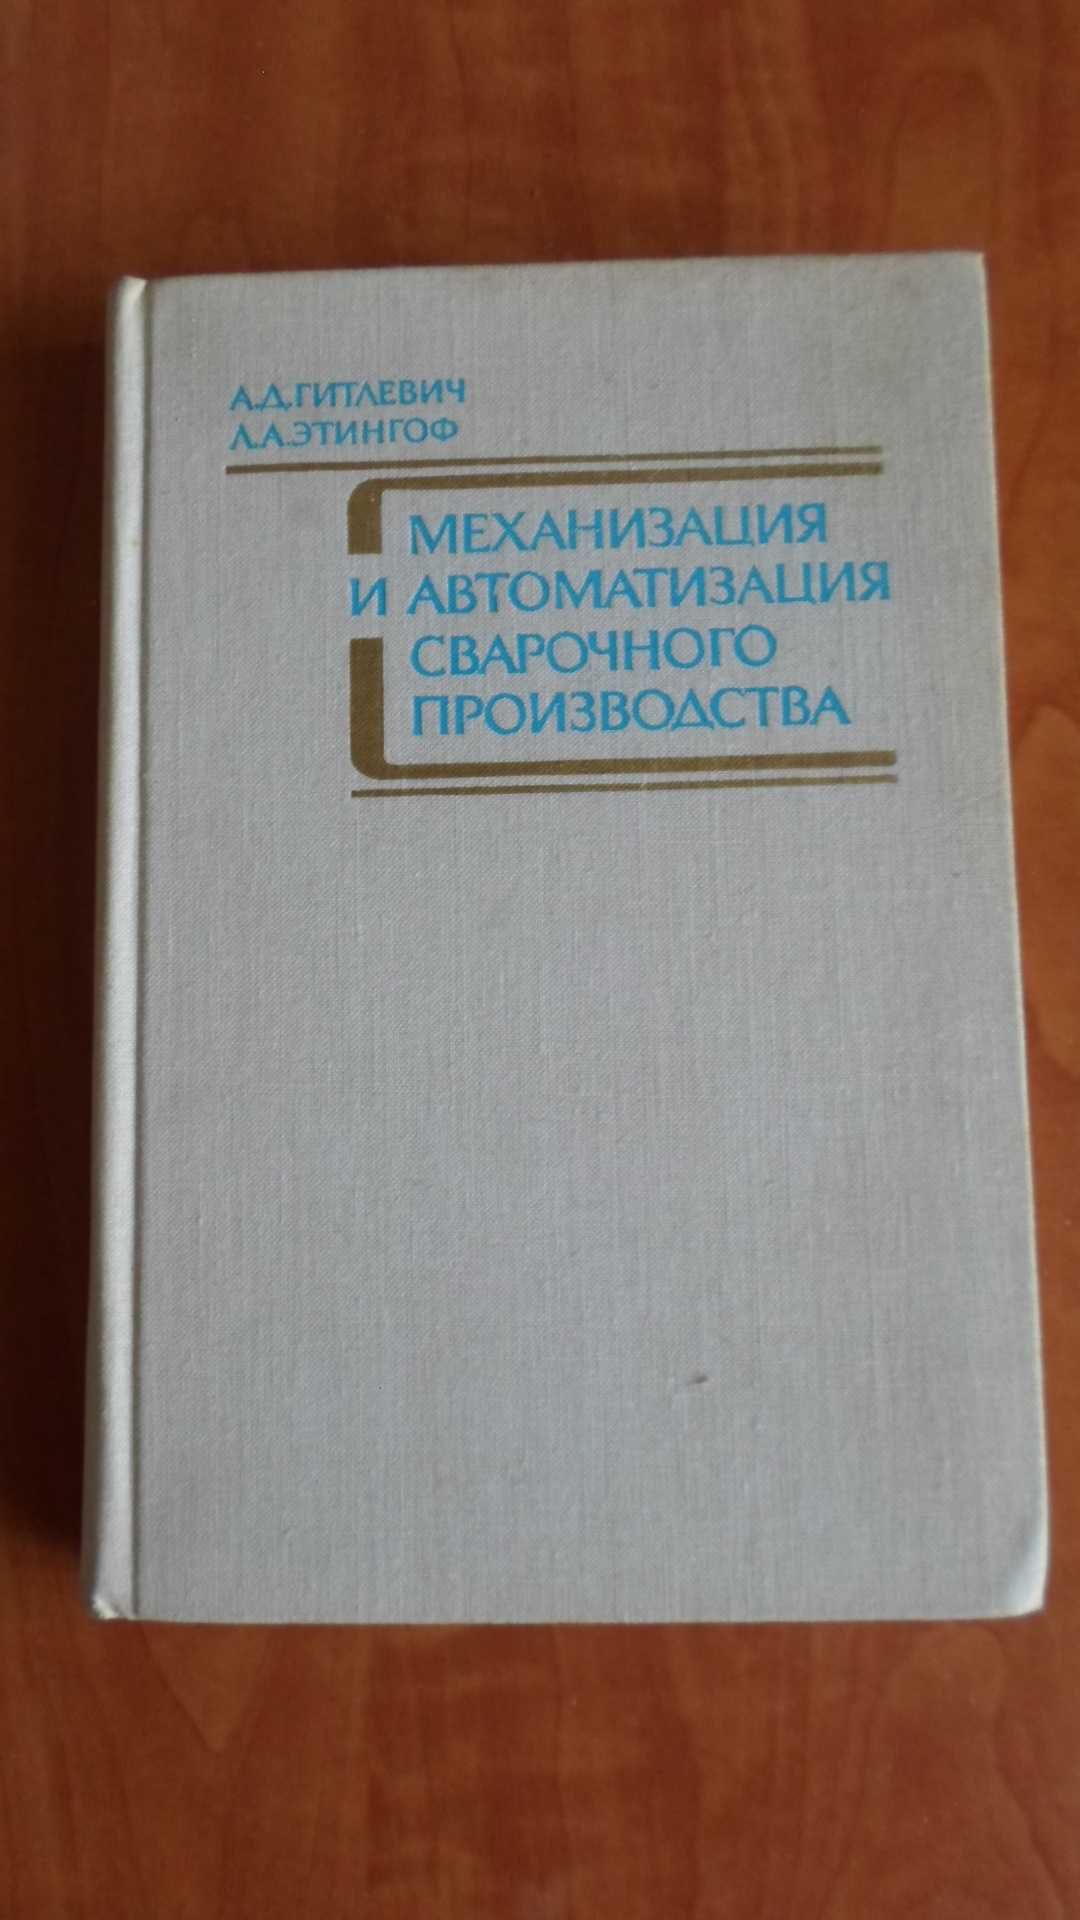 Книга "Механизация и автоматизация сварочного производства"